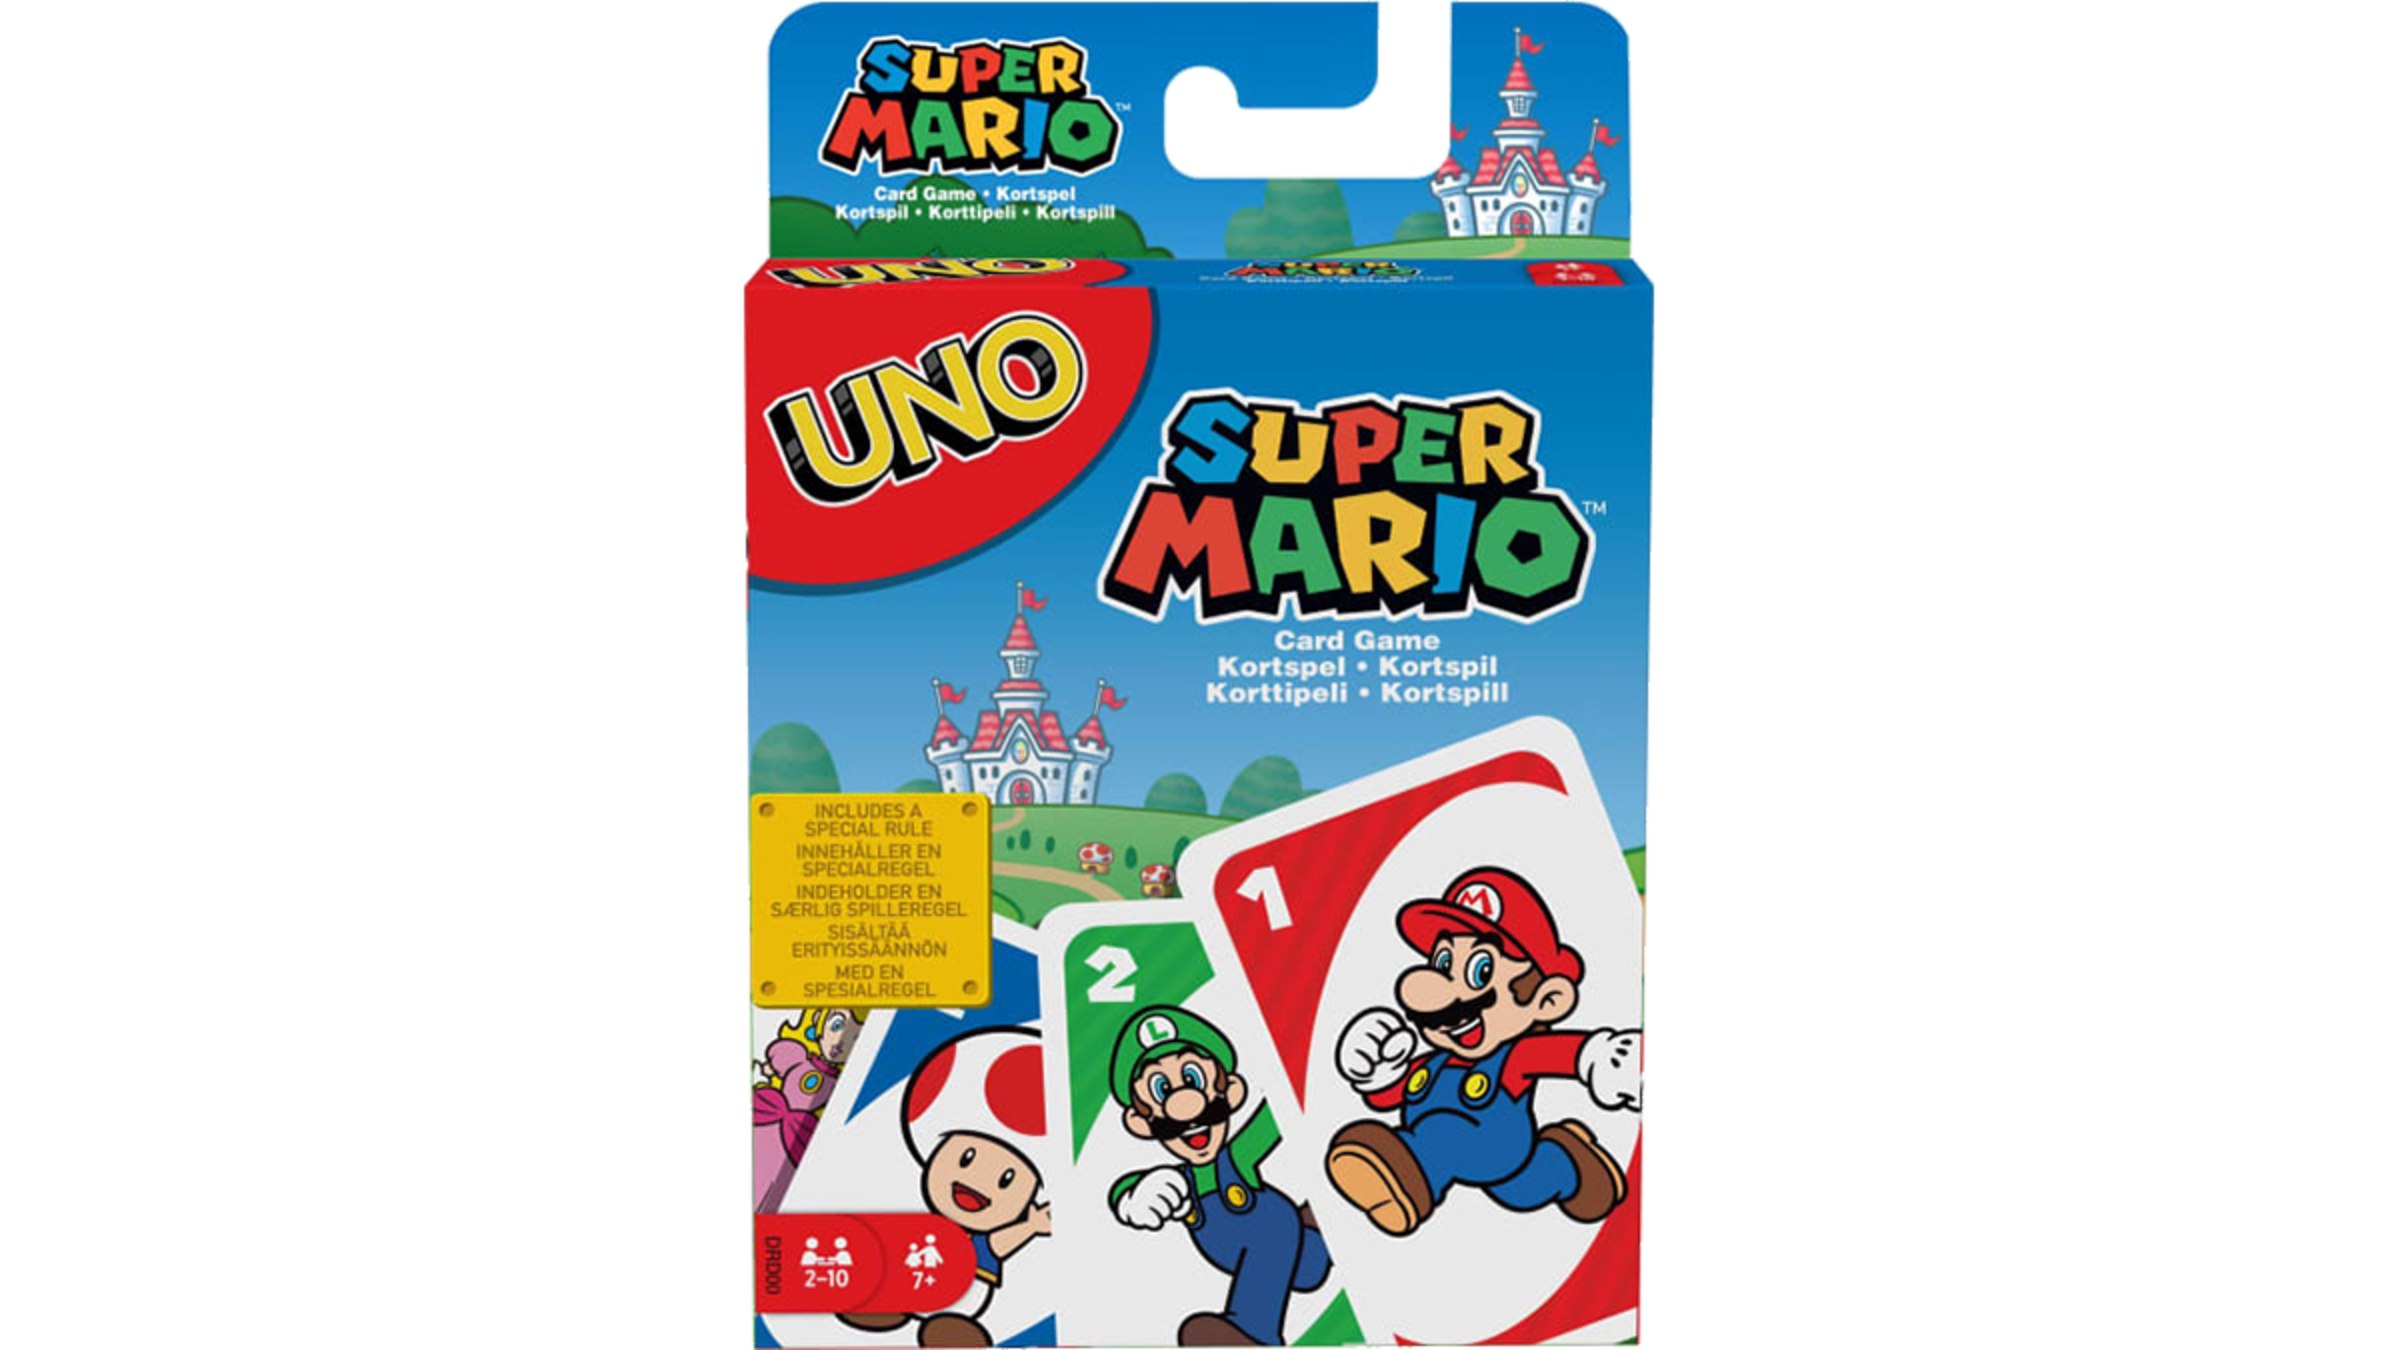 UNO - Super Mario Bros.™